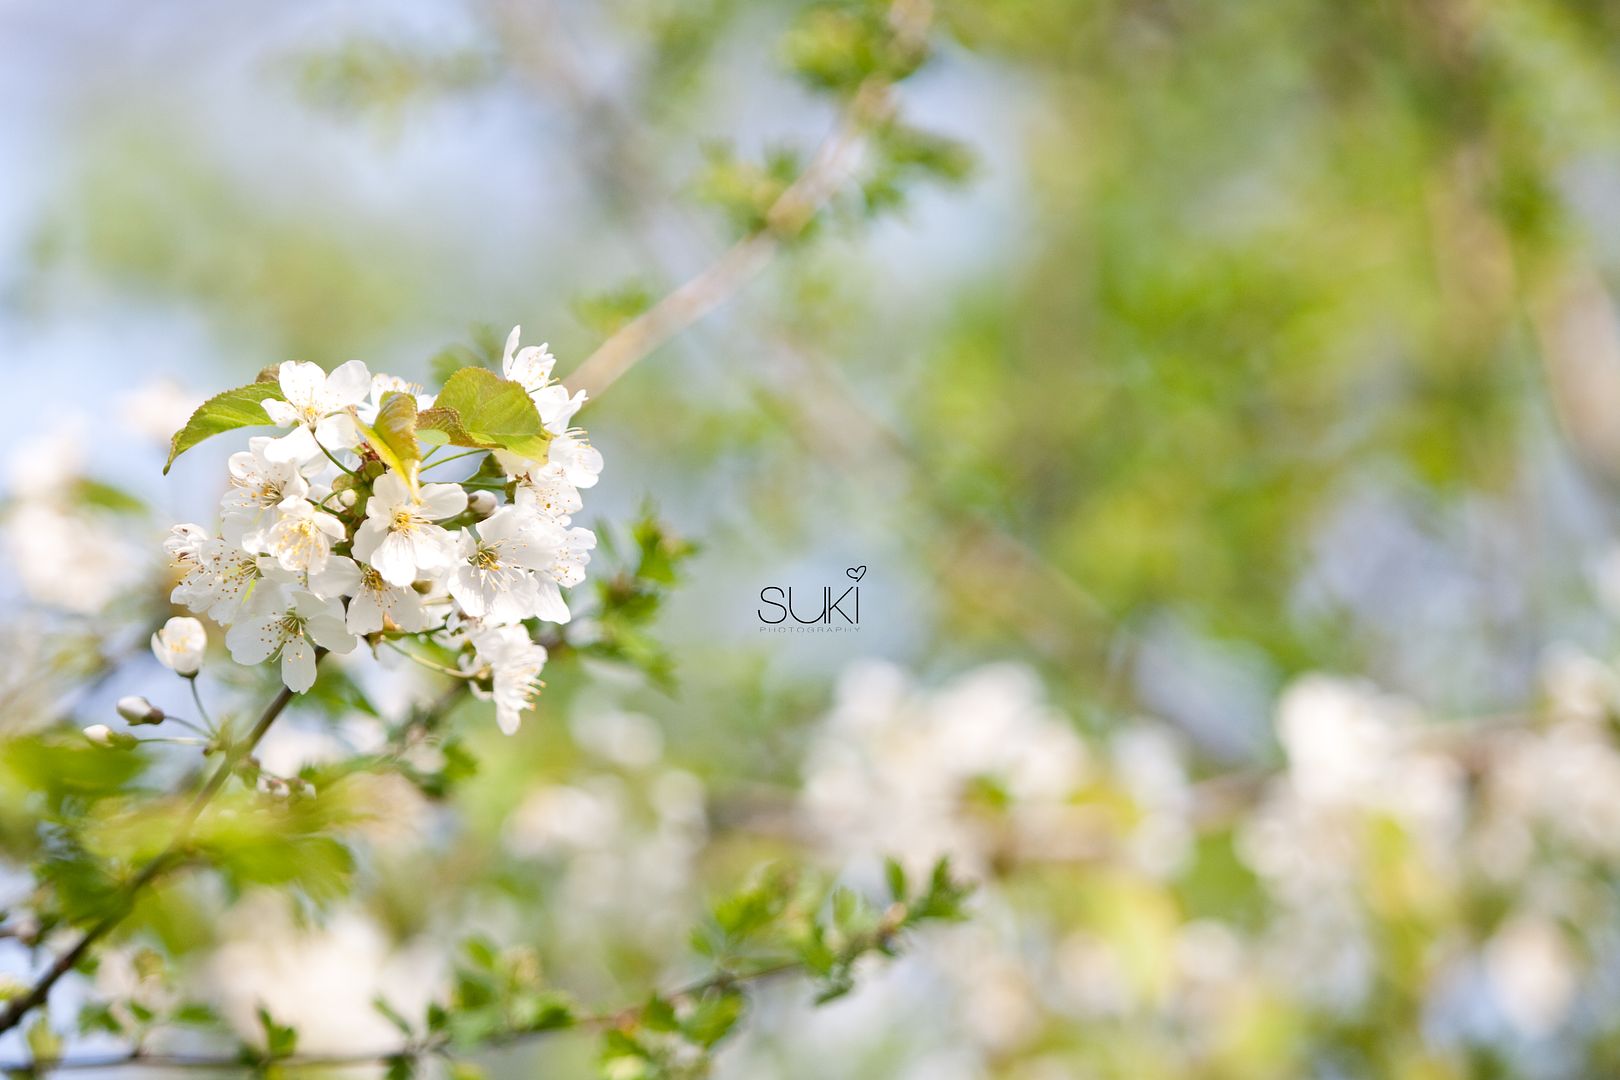 suki,spring flowers,4.30.